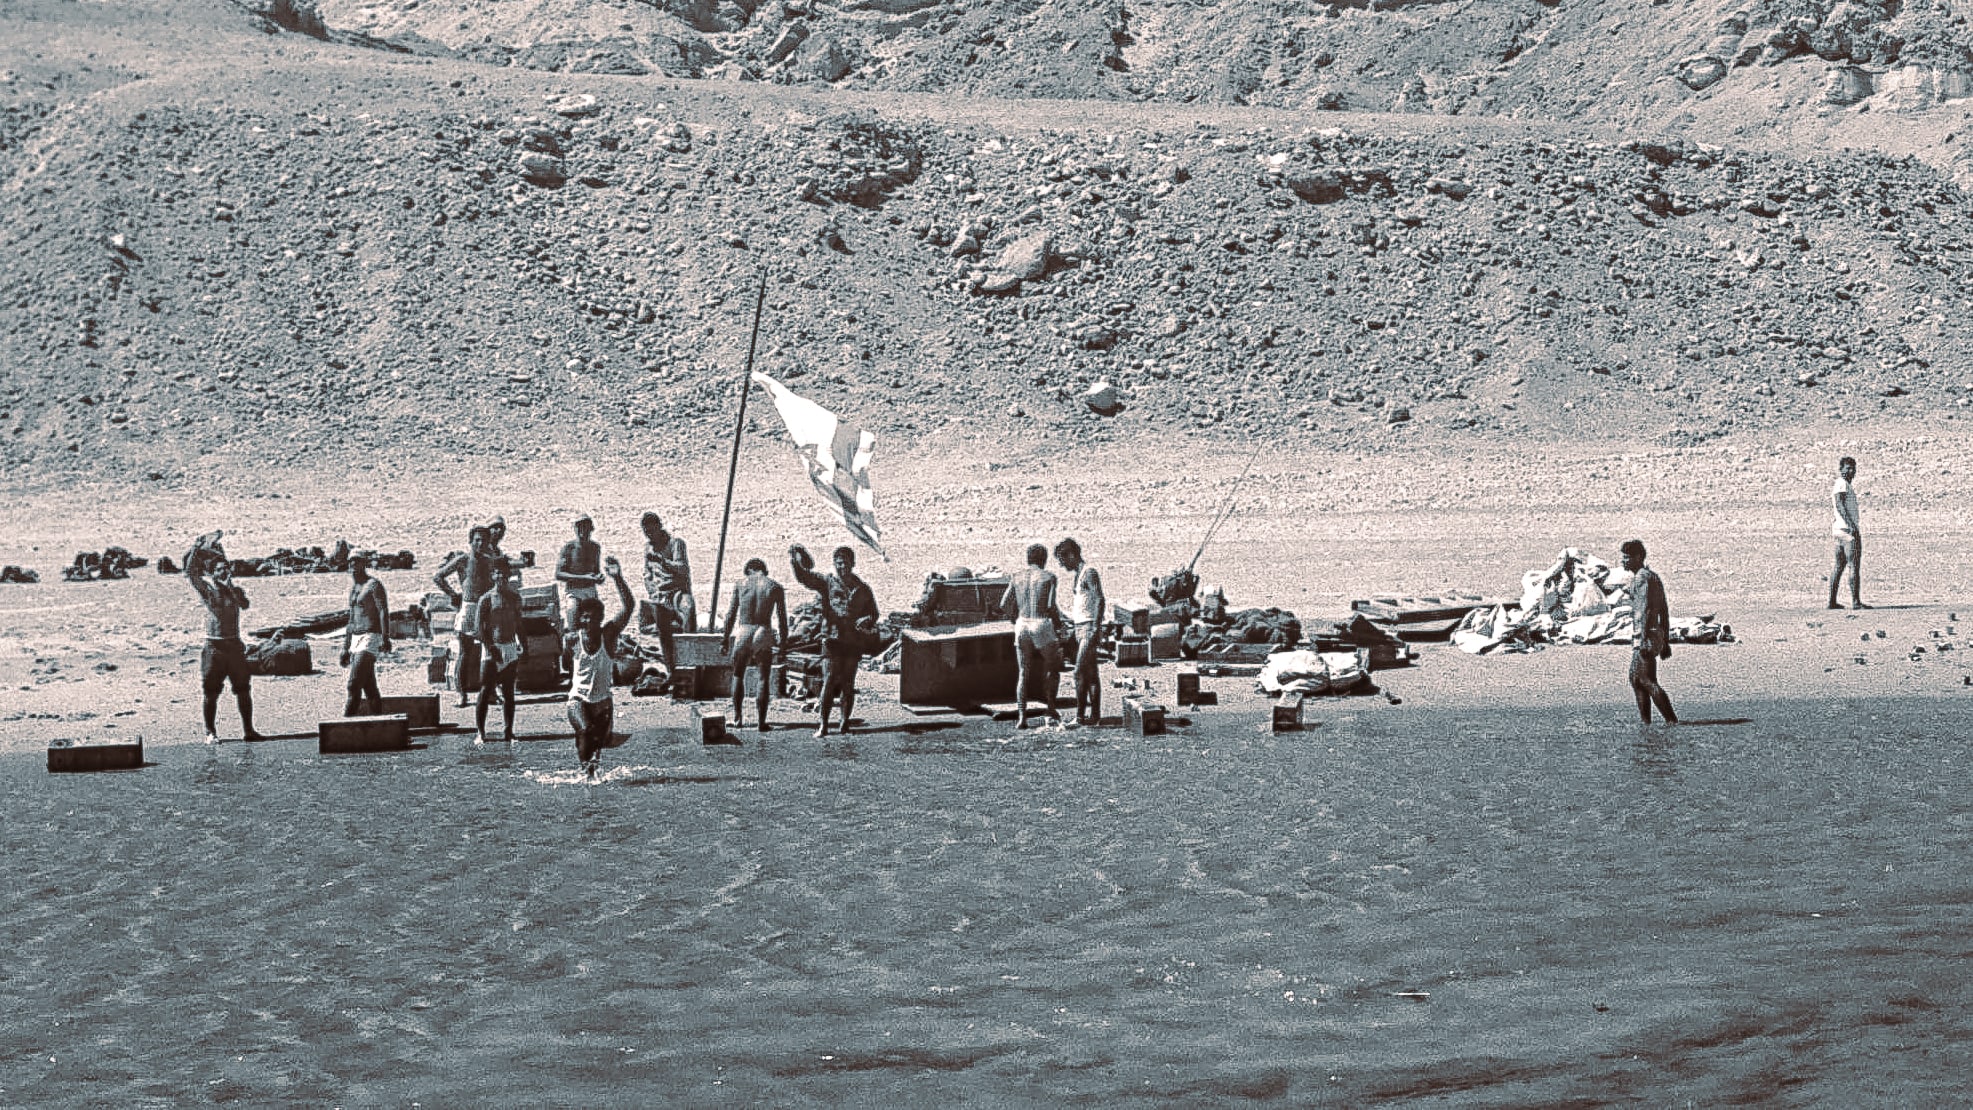 חיילי מילואים באי טיראן במהלך מלחמת ששת הימים, 8 ביוני 1967 (צילום: אוסף התצלומים הלאומי, עיבוד מחשב)